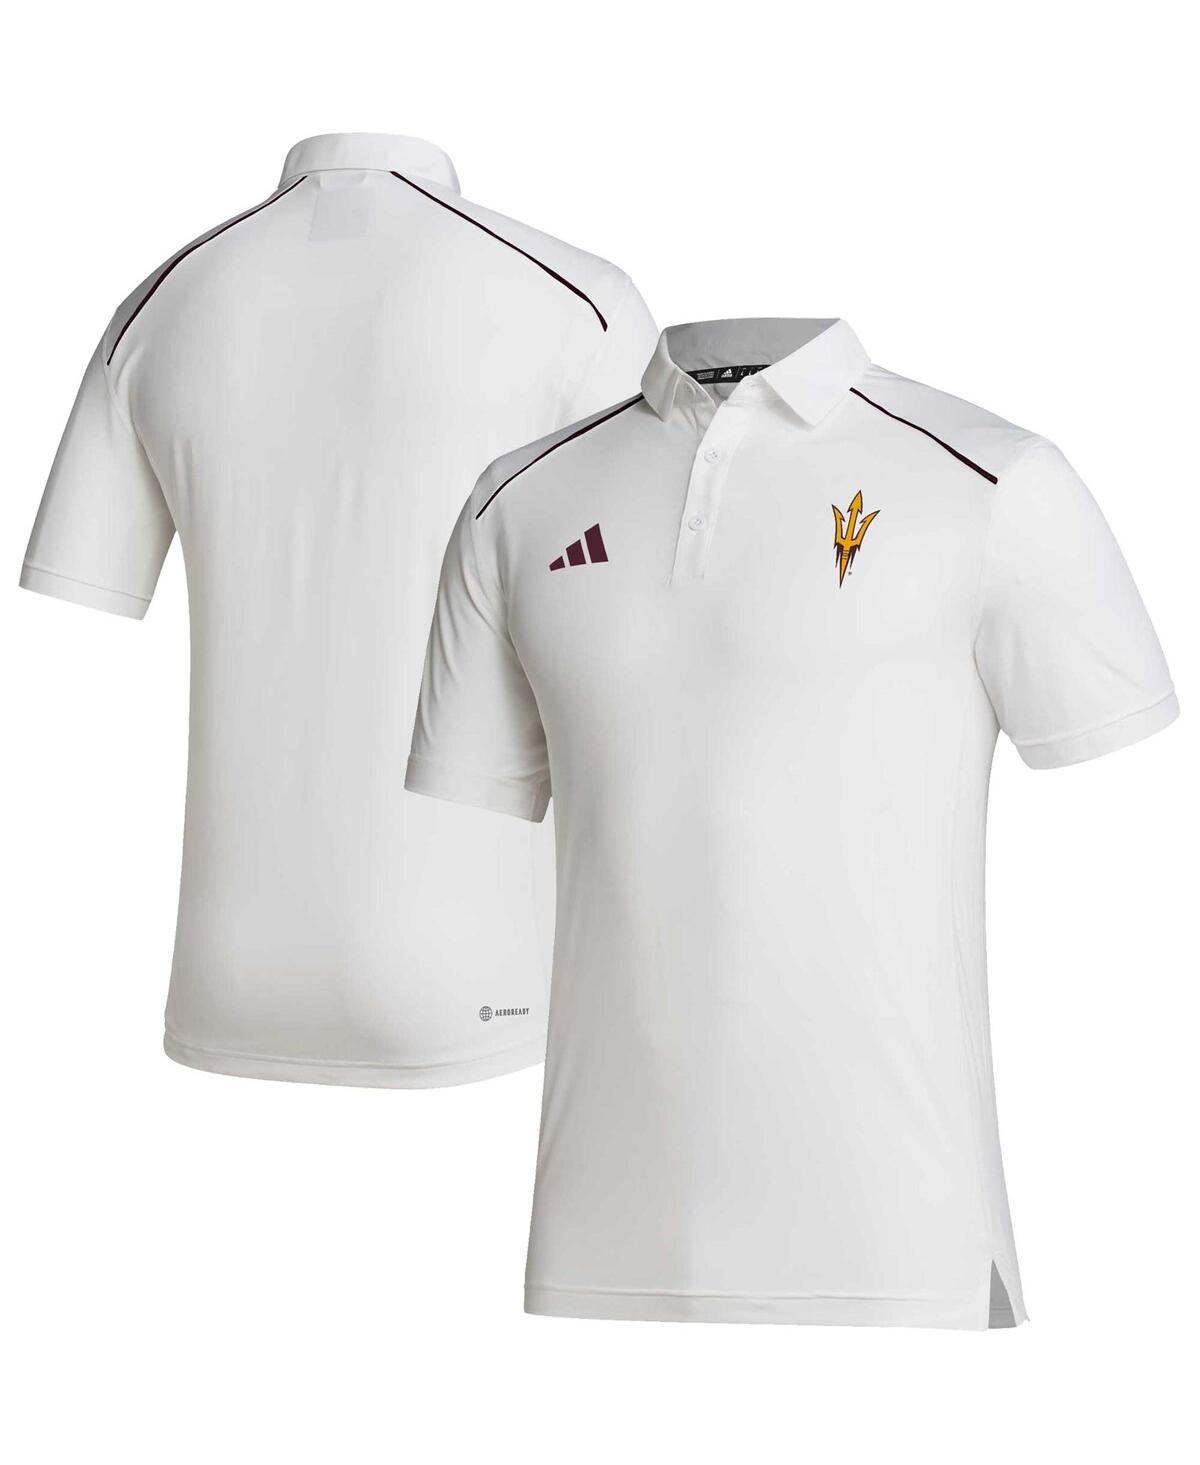 Adidas Originals Men's Adidas White Arizona State Sun Devils Coaches Aeroready Polo Shirt